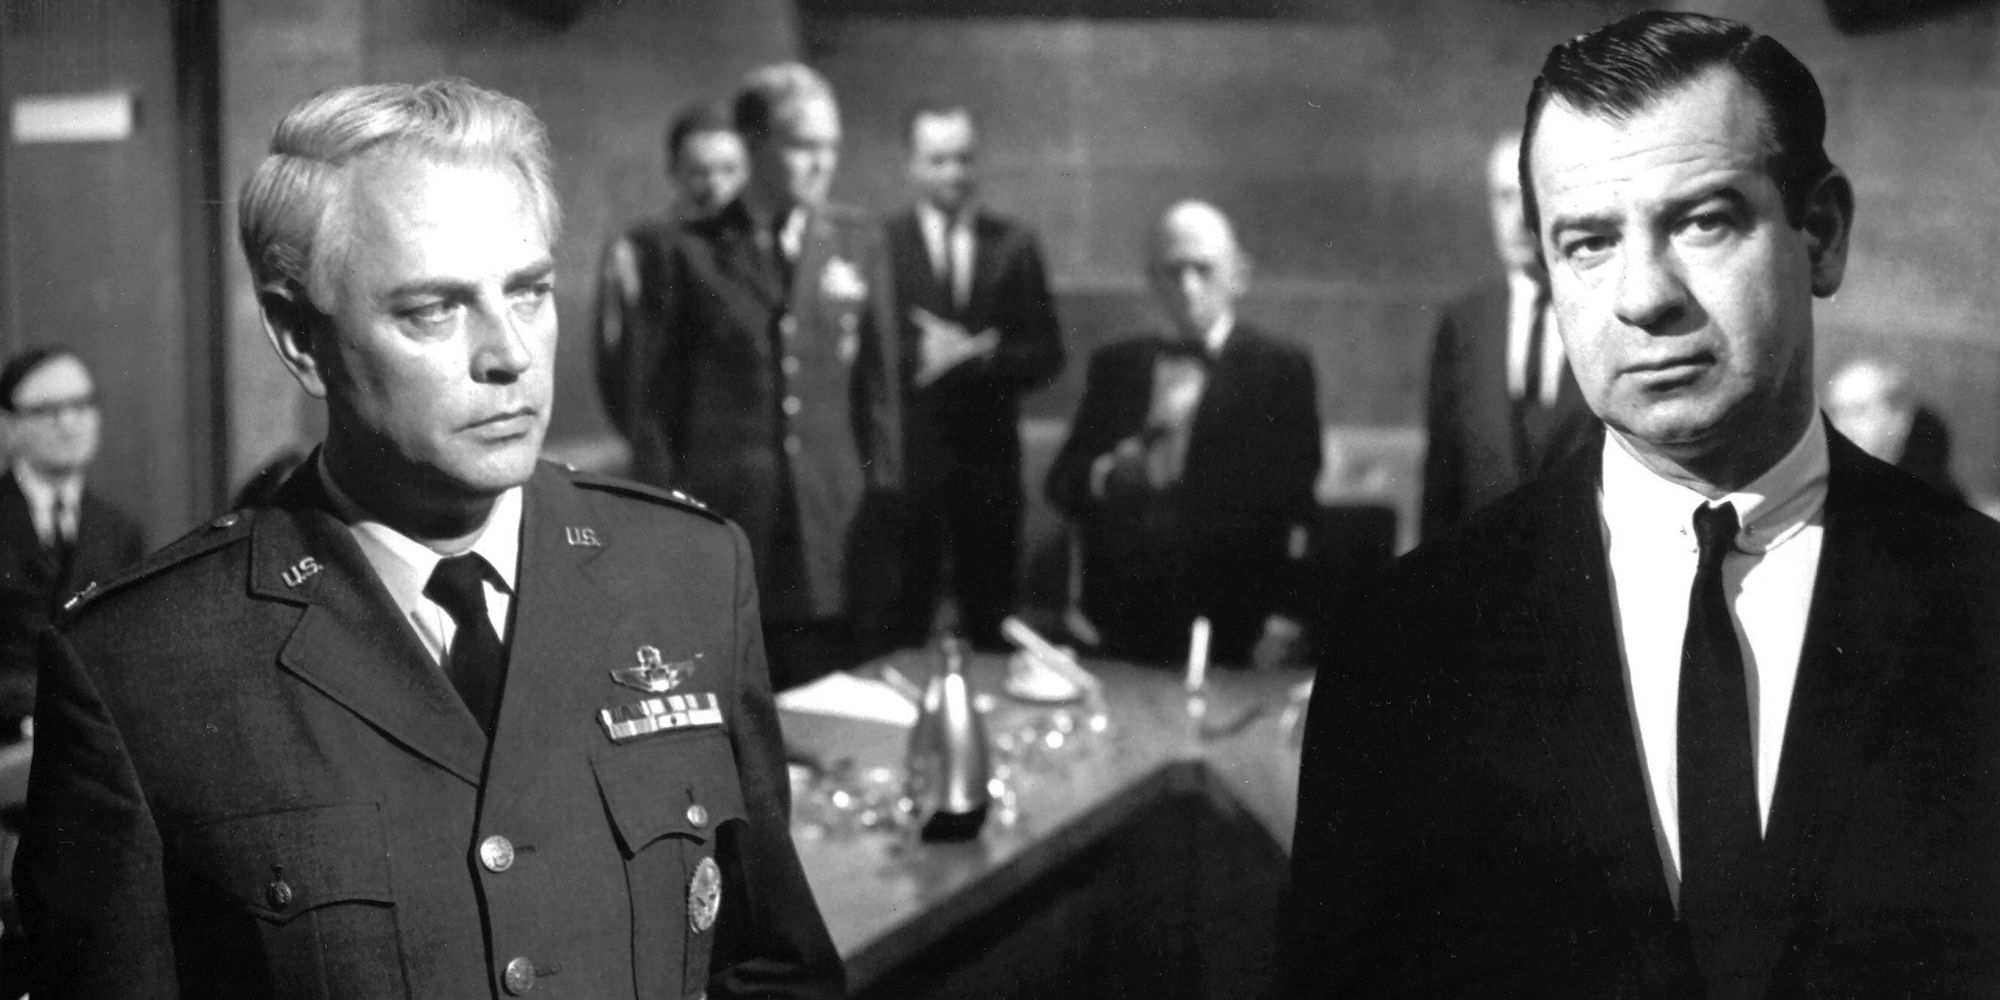 Walter Matthau as Professor Groeteschele next to an army officer in Fail Safe